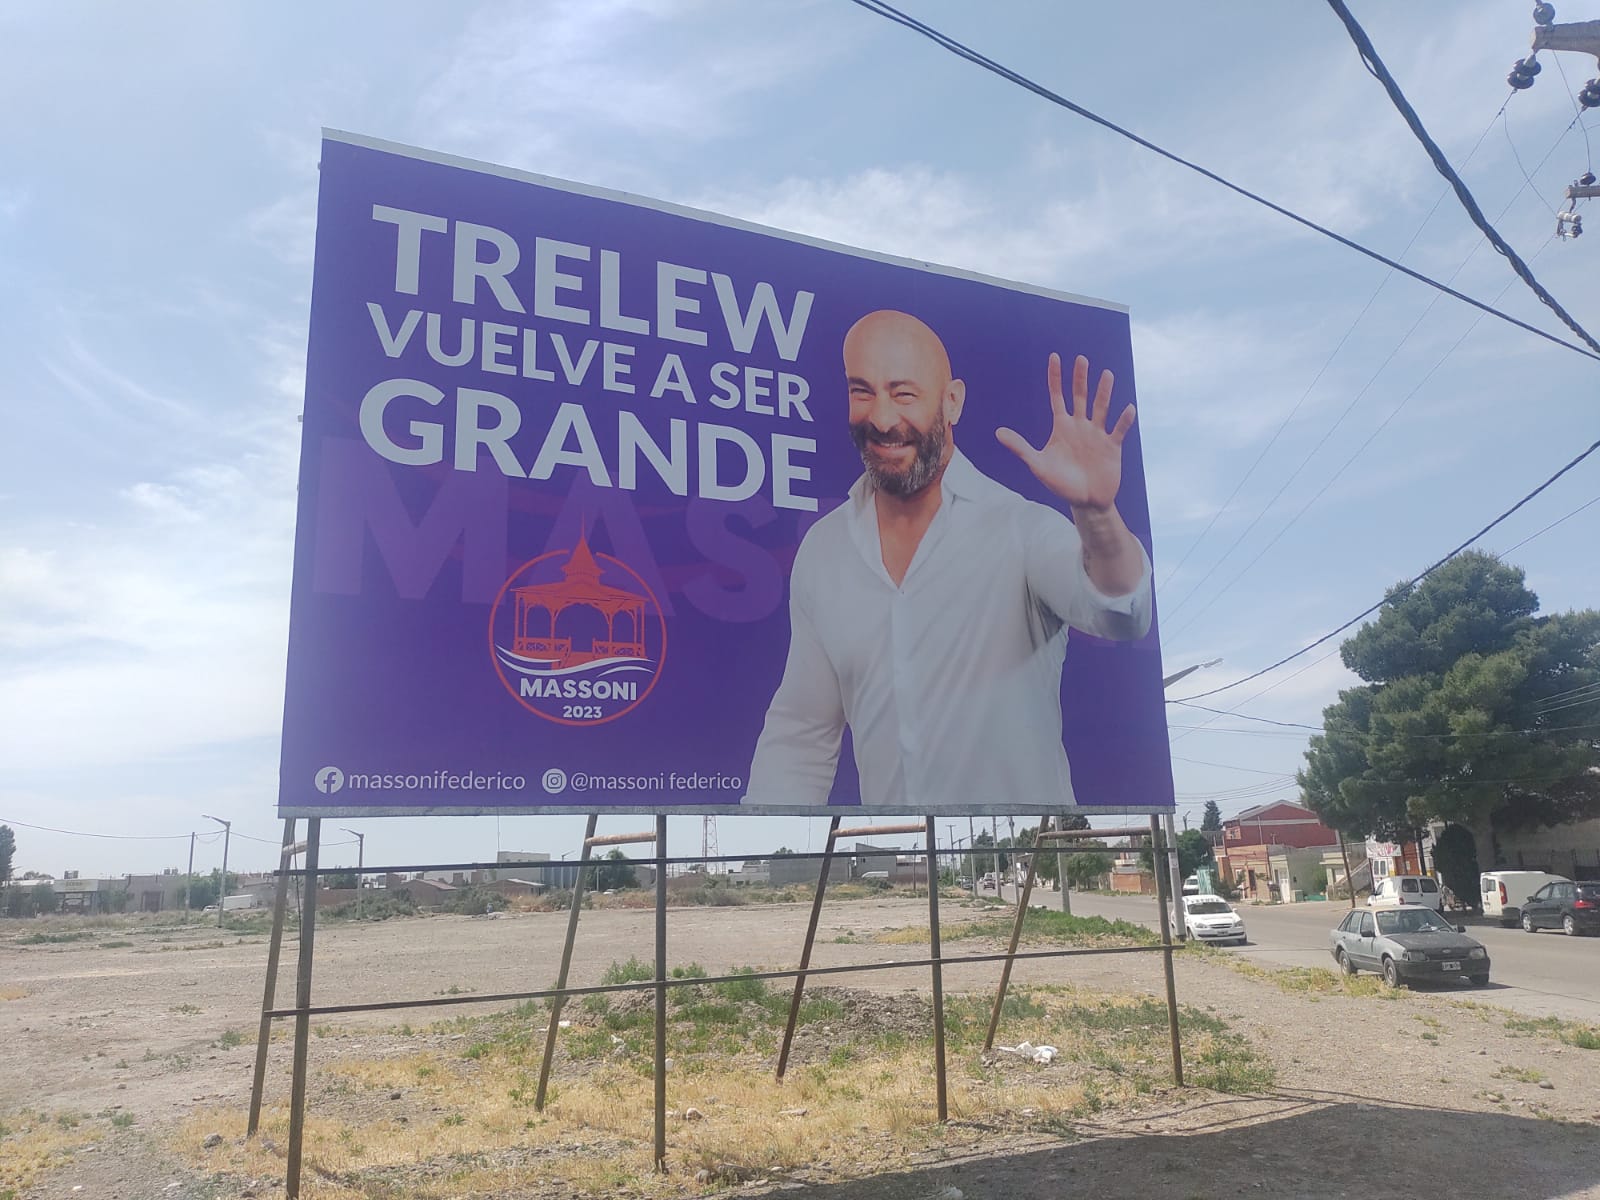 Con la consigna “Trelew vuelve a ser grande”, Massoni lanzó su propuesta en las calles y en las redes sociales